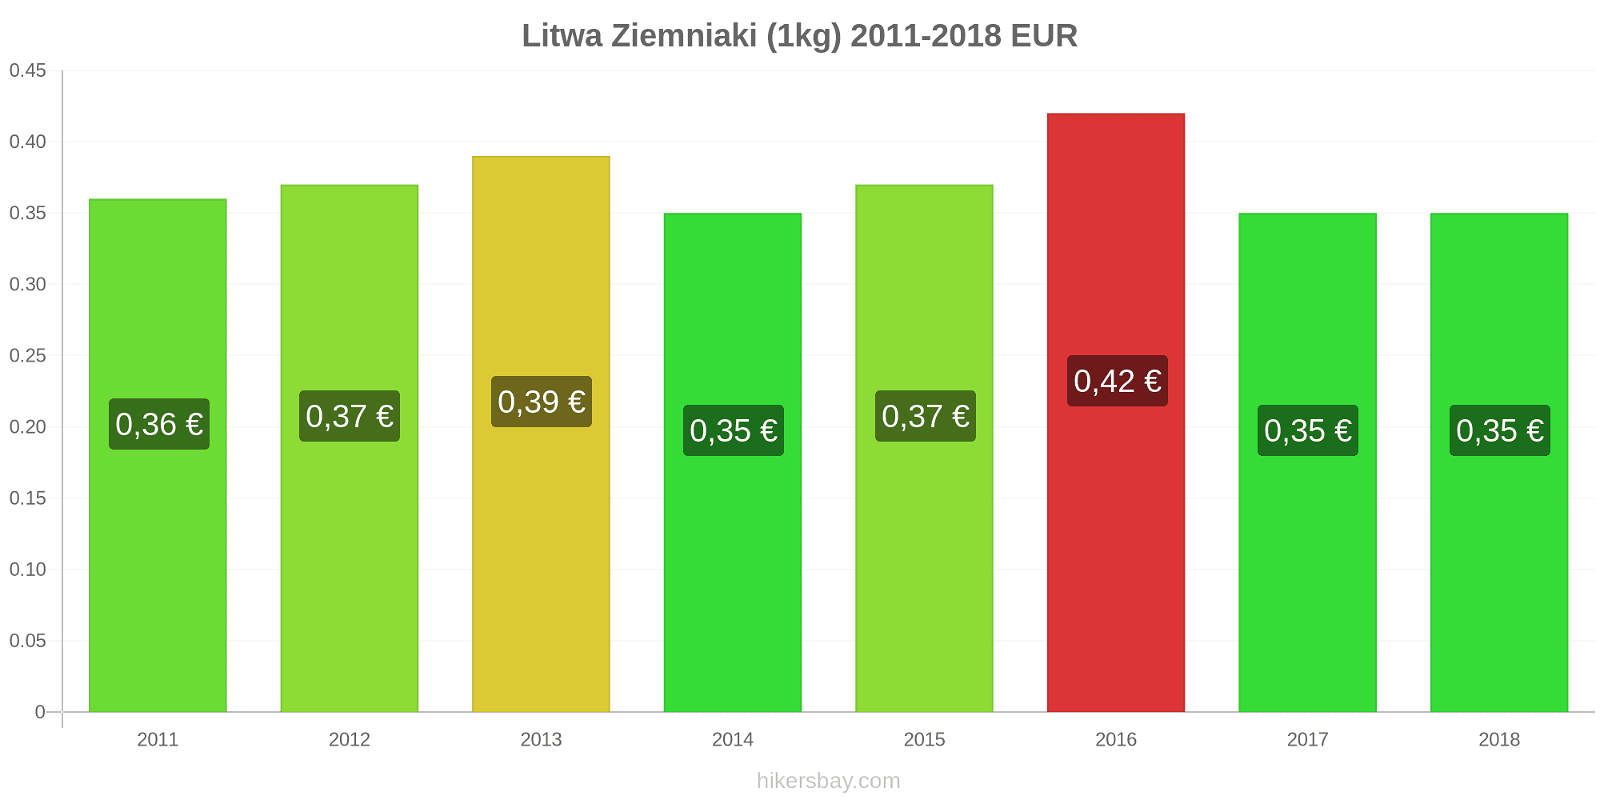 Litwa zmiany cen Ziemniaki (1kg) hikersbay.com